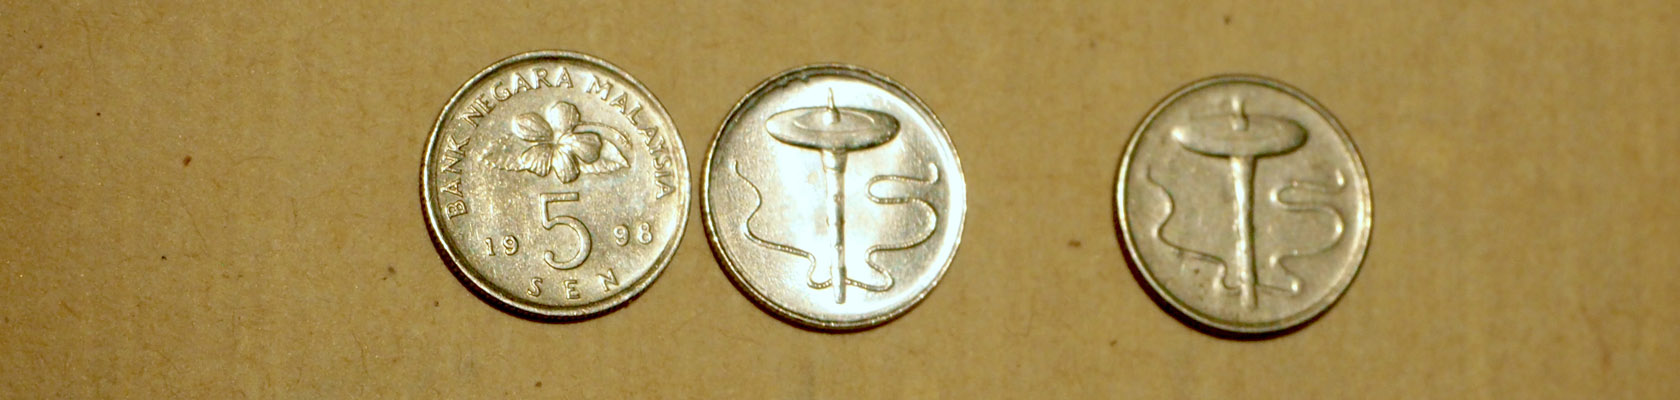 3 Münzen aus Malaysia, auf denen eine Kreisel abgebildet ist.